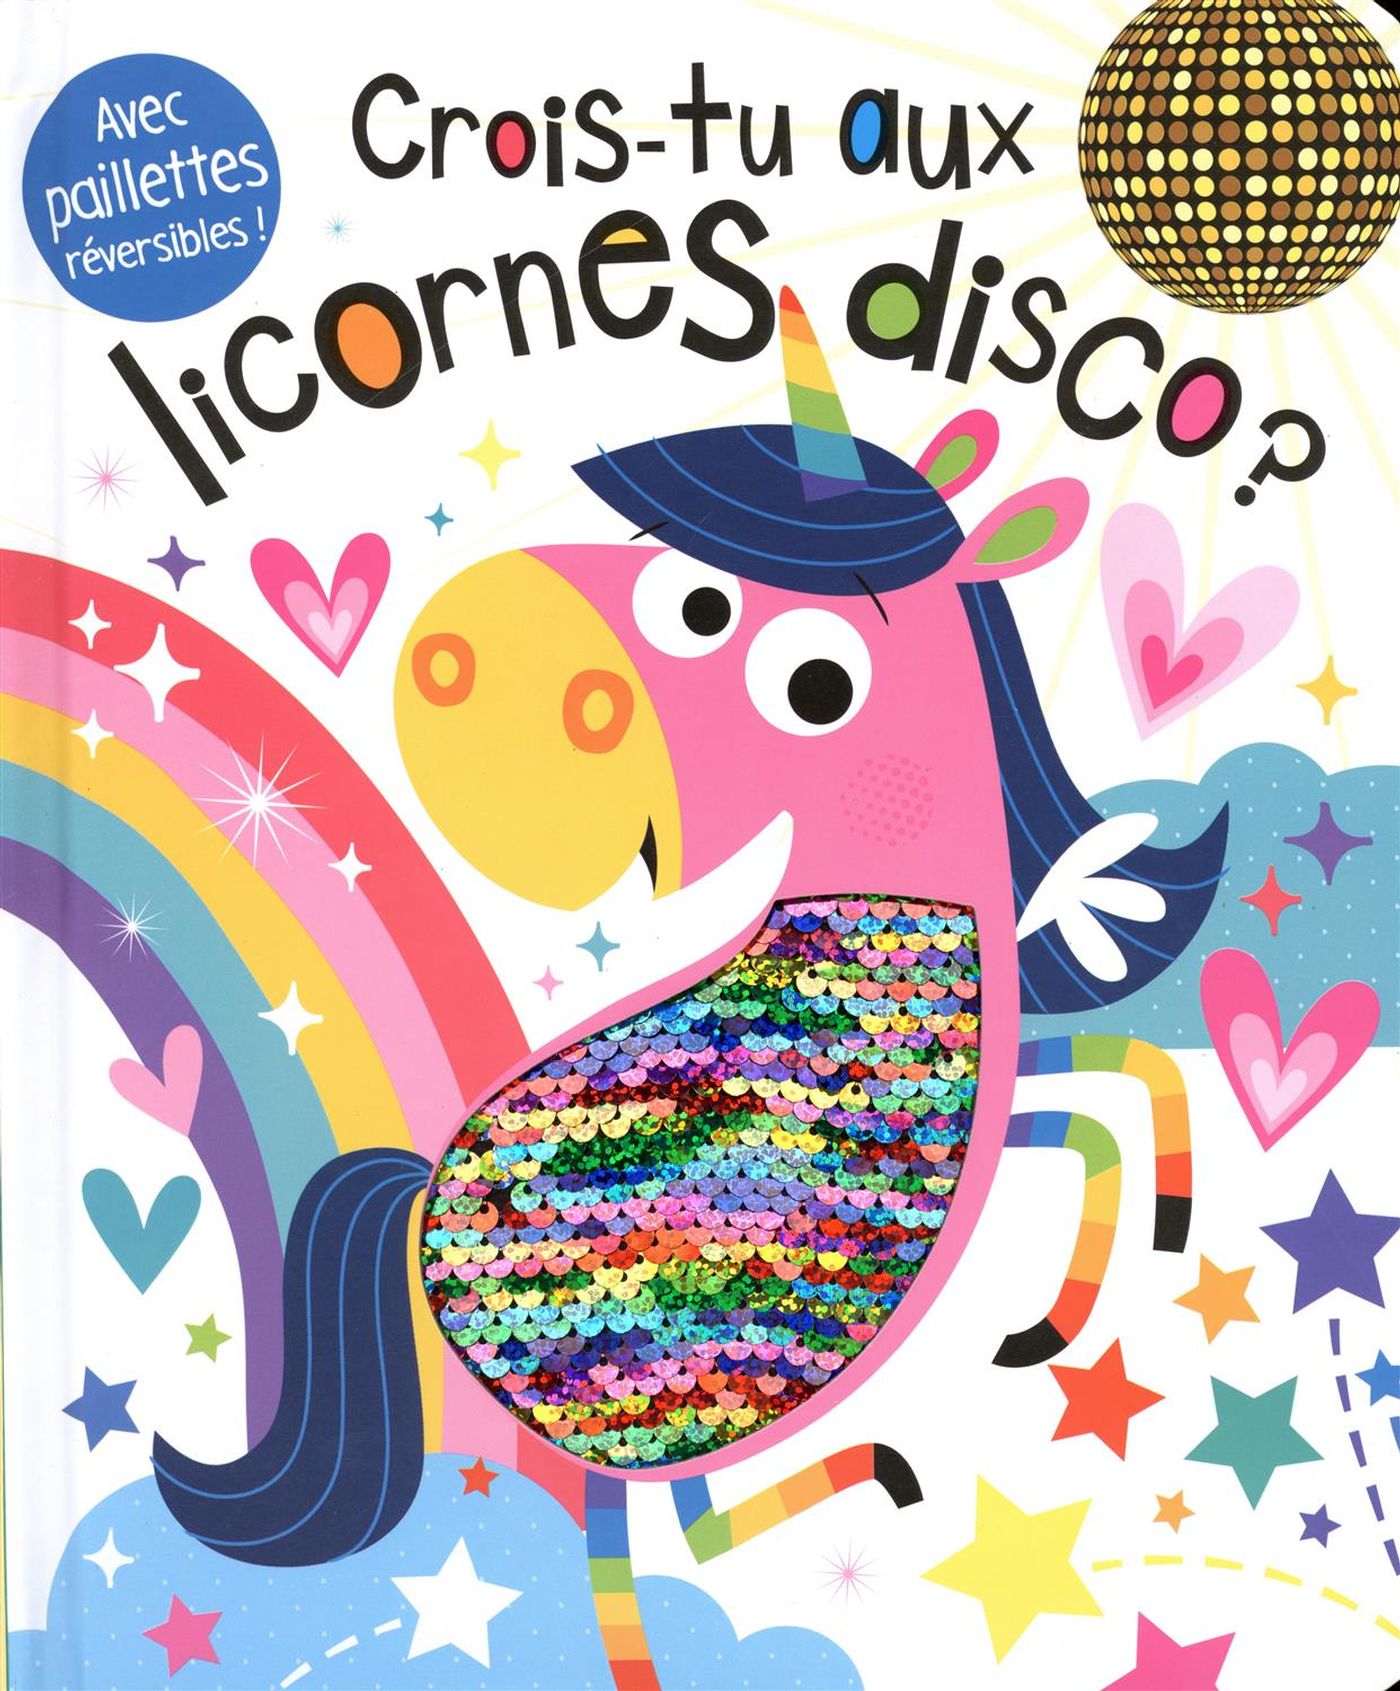 Crois-tu aux licornes disco?